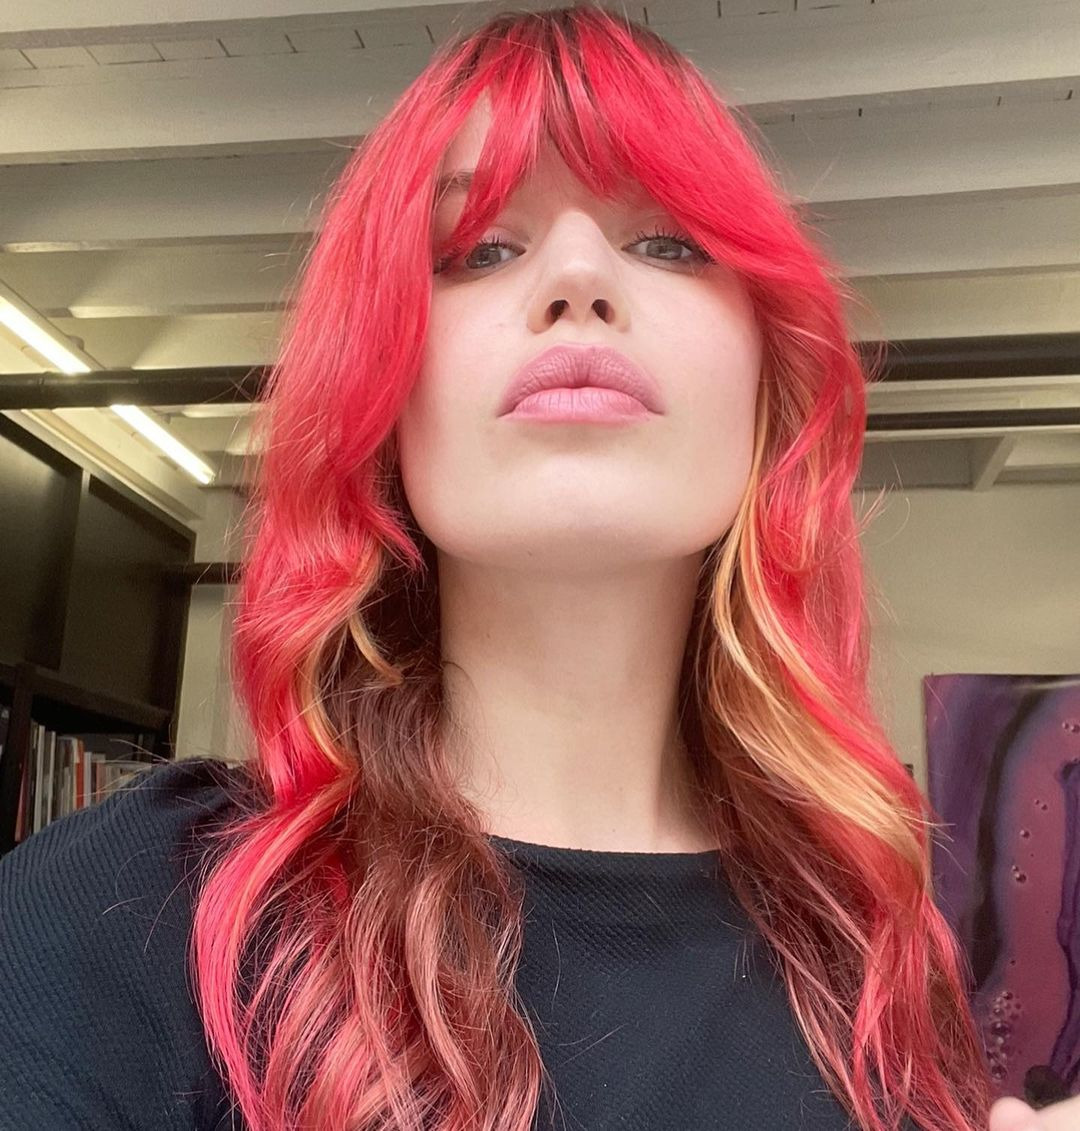 Leonie Hanne'den Georgia May Jagger'a Haftanın Güzellik Instagramları